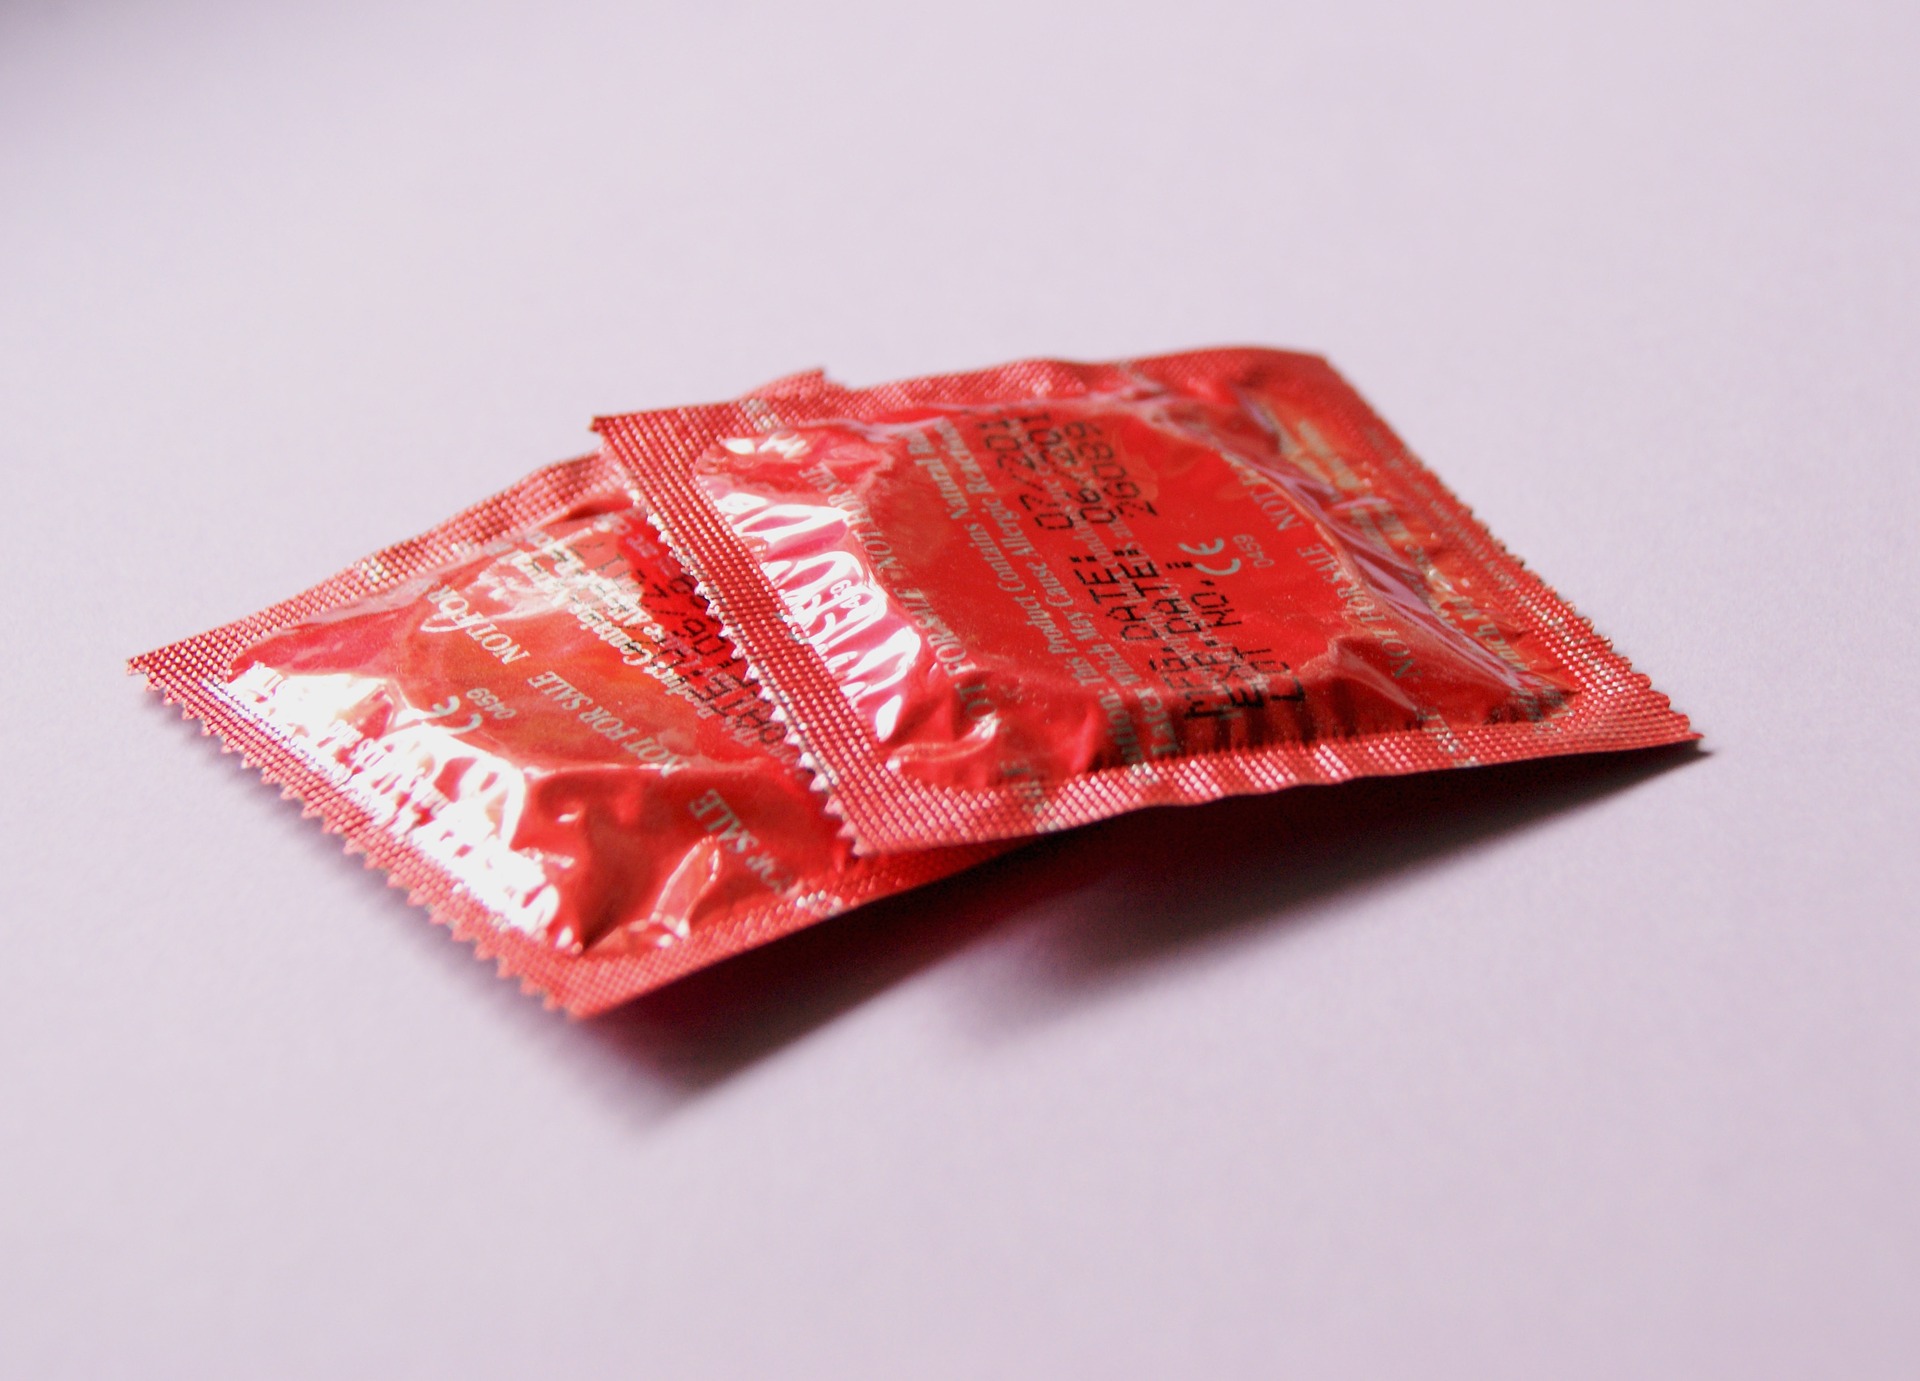 condoms pic.jpg